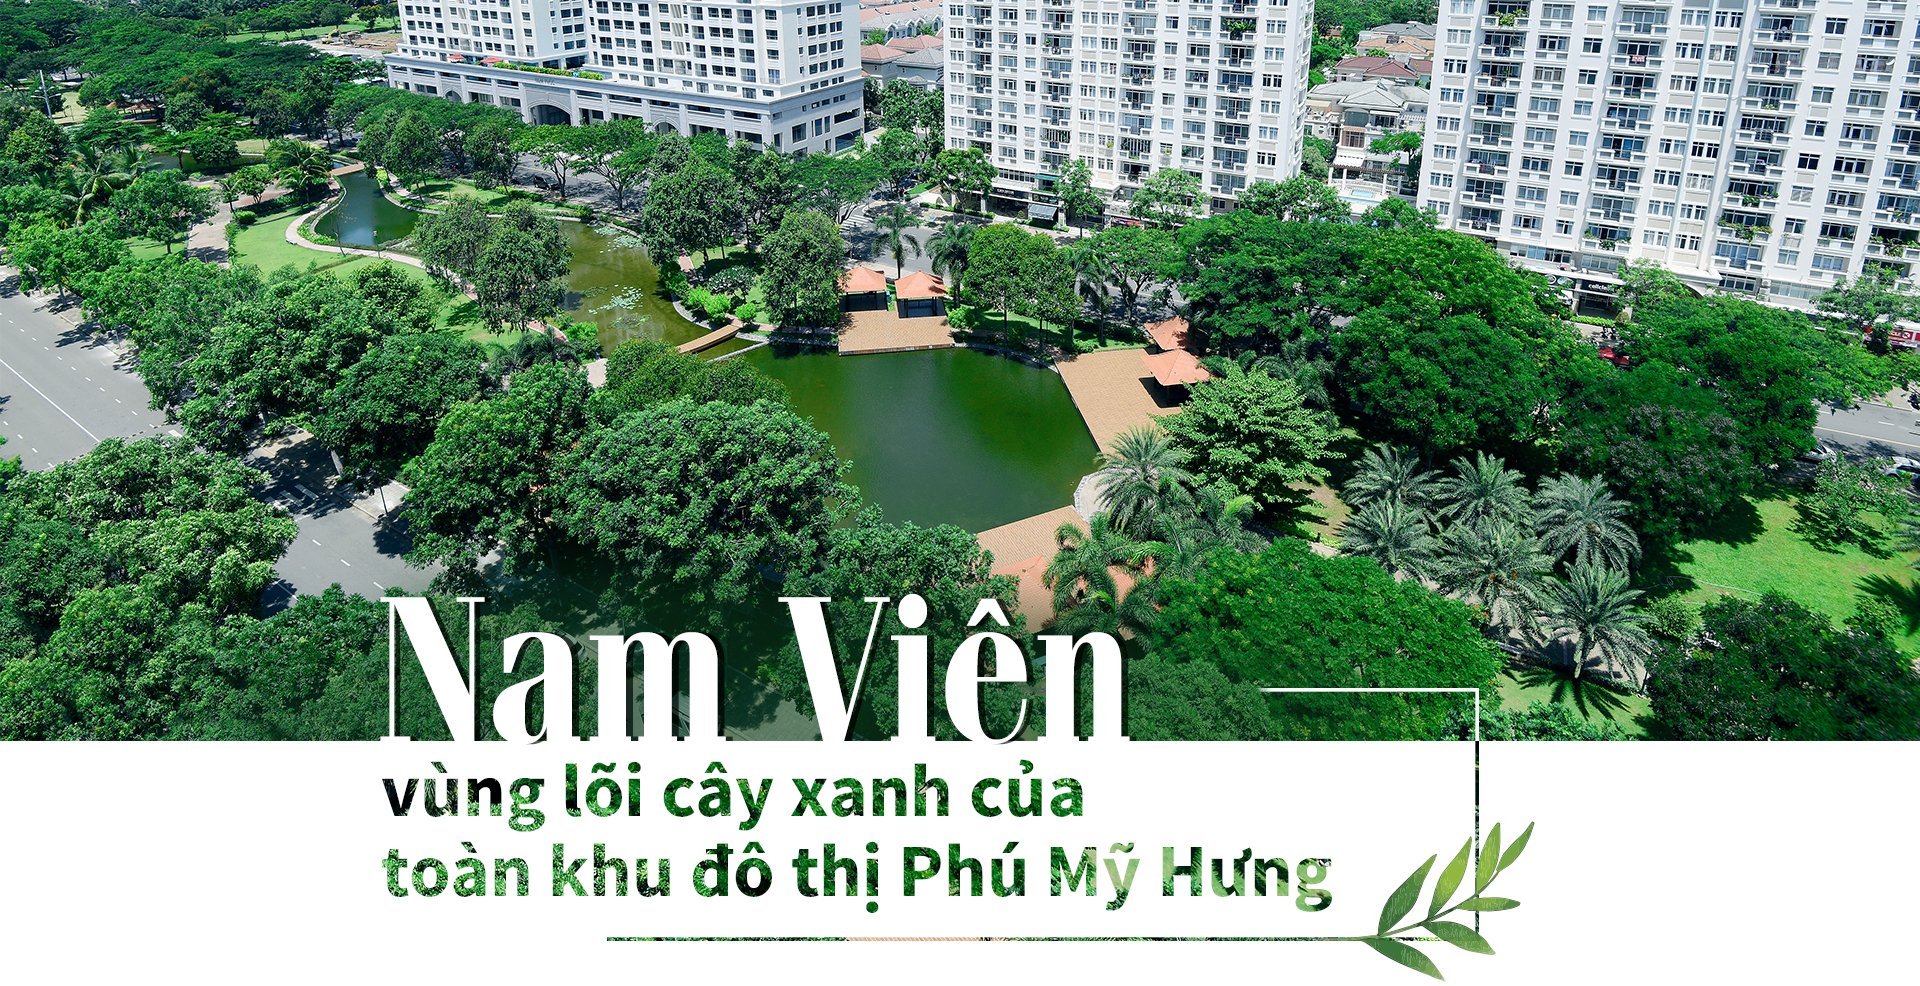 Khu Nam Viên - lõi cây xanh của đô thị Phú Mỹ Hưng